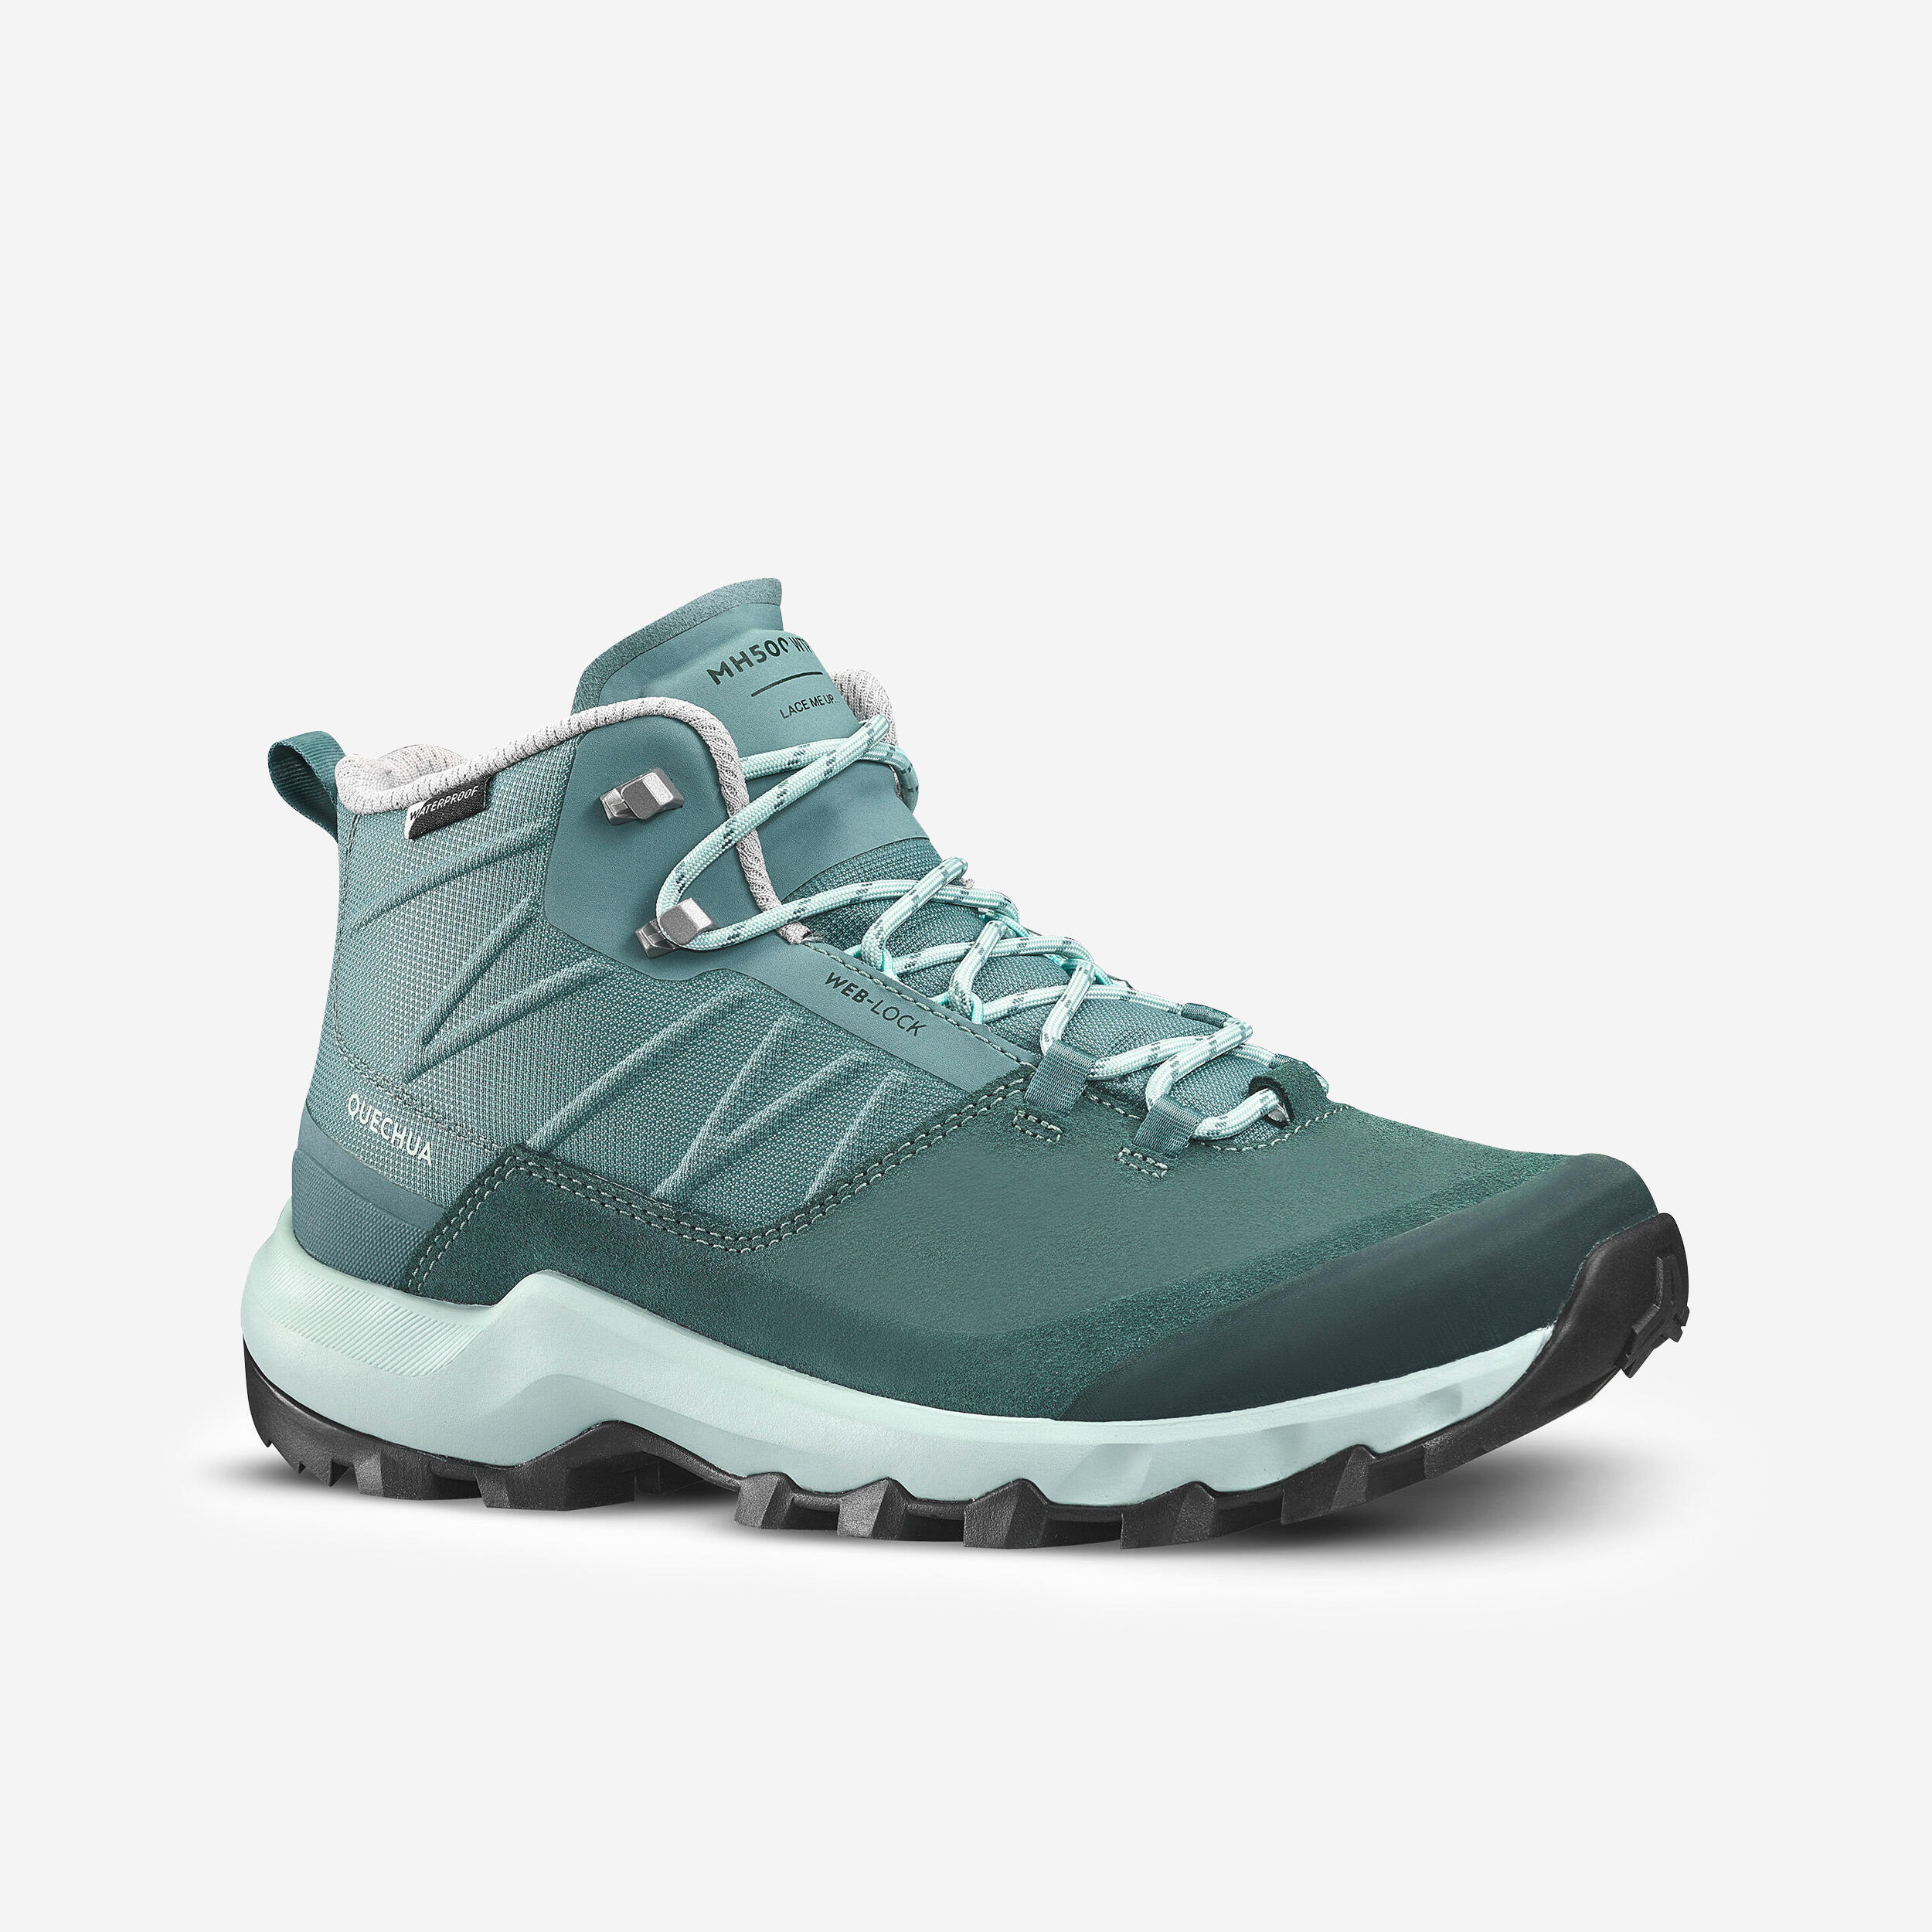 Chaussures de randonnée imperméables femme – MH 500 vert - QUECHUA